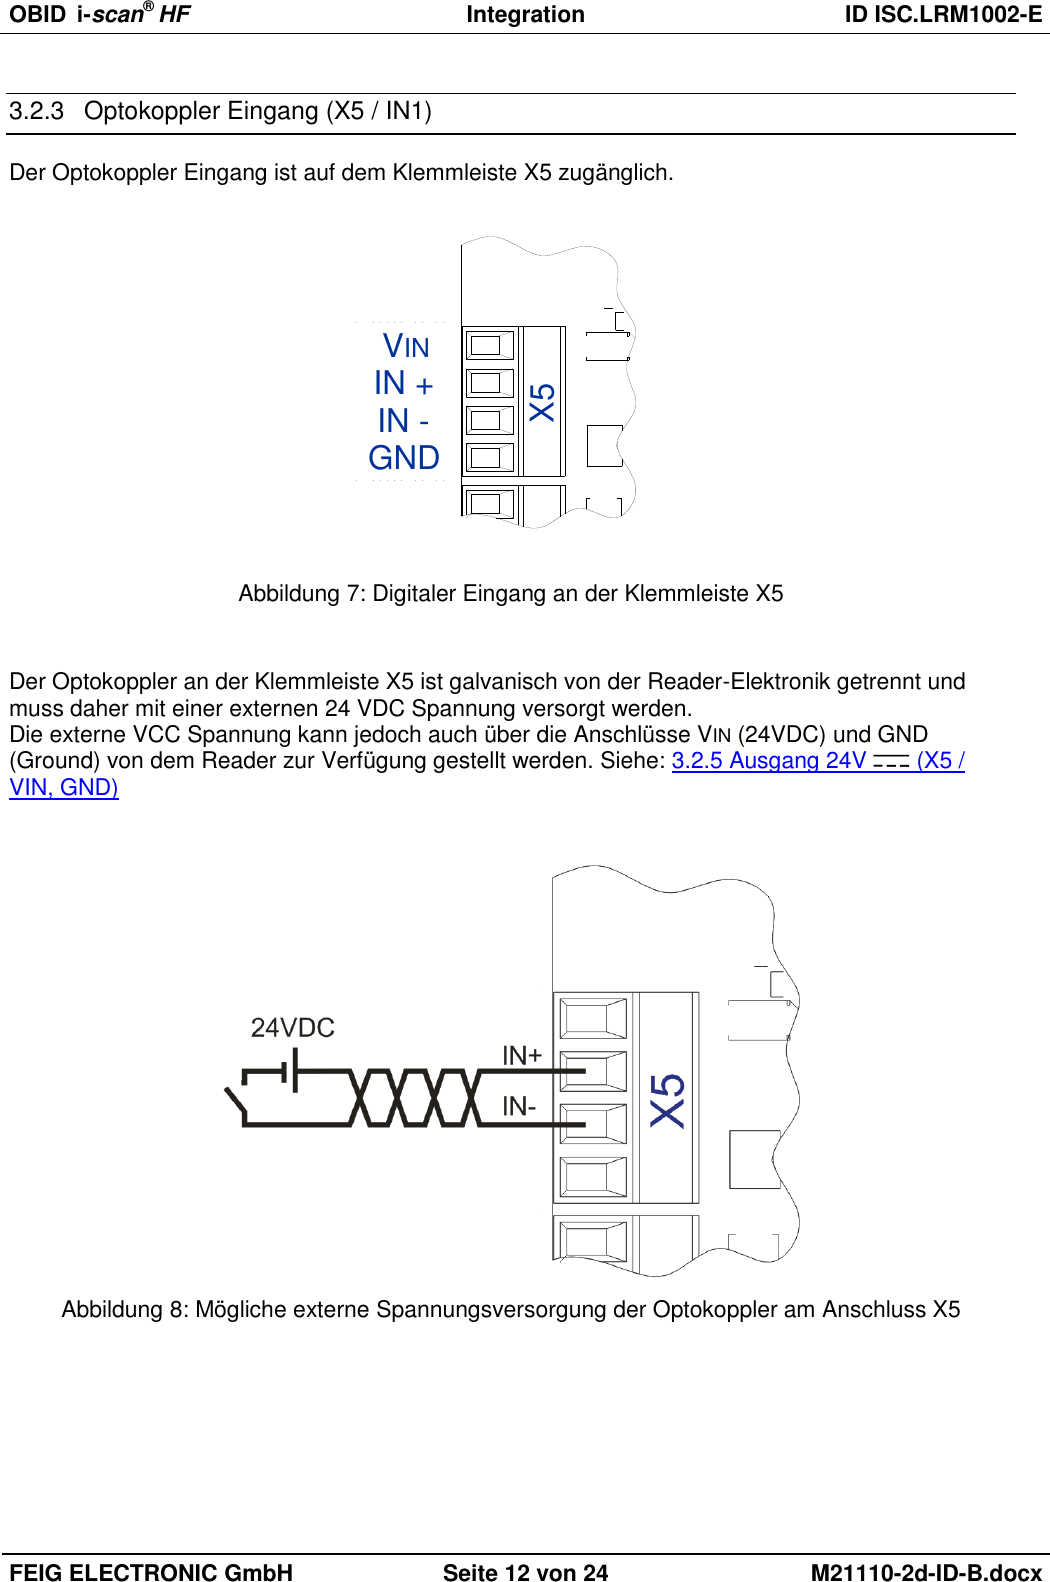 OBID  i-scan® HF Integration  ID ISC.LRM1002-E  FEIG ELECTRONIC GmbH Seite 12 von 24 M21110-2d-ID-B.docx  3.2.3  Optokoppler Eingang (X5 / IN1) Der Optokoppler Eingang ist auf dem Klemmleiste X5 zugänglich. GNDVININ -IN +X5 Abbildung 7: Digitaler Eingang an der Klemmleiste X5  Der Optokoppler an der Klemmleiste X5 ist galvanisch von der Reader-Elektronik getrennt und muss daher mit einer externen 24 VDC Spannung versorgt werden. Die externe VCC Spannung kann jedoch auch über die Anschlüsse VIN (24VDC) und GND (Ground) von dem Reader zur Verfügung gestellt werden. Siehe: 3.2.5 Ausgang 24V   (X5 / VIN, GND)    Abbildung 8: Mögliche externe Spannungsversorgung der Optokoppler am Anschluss X5 